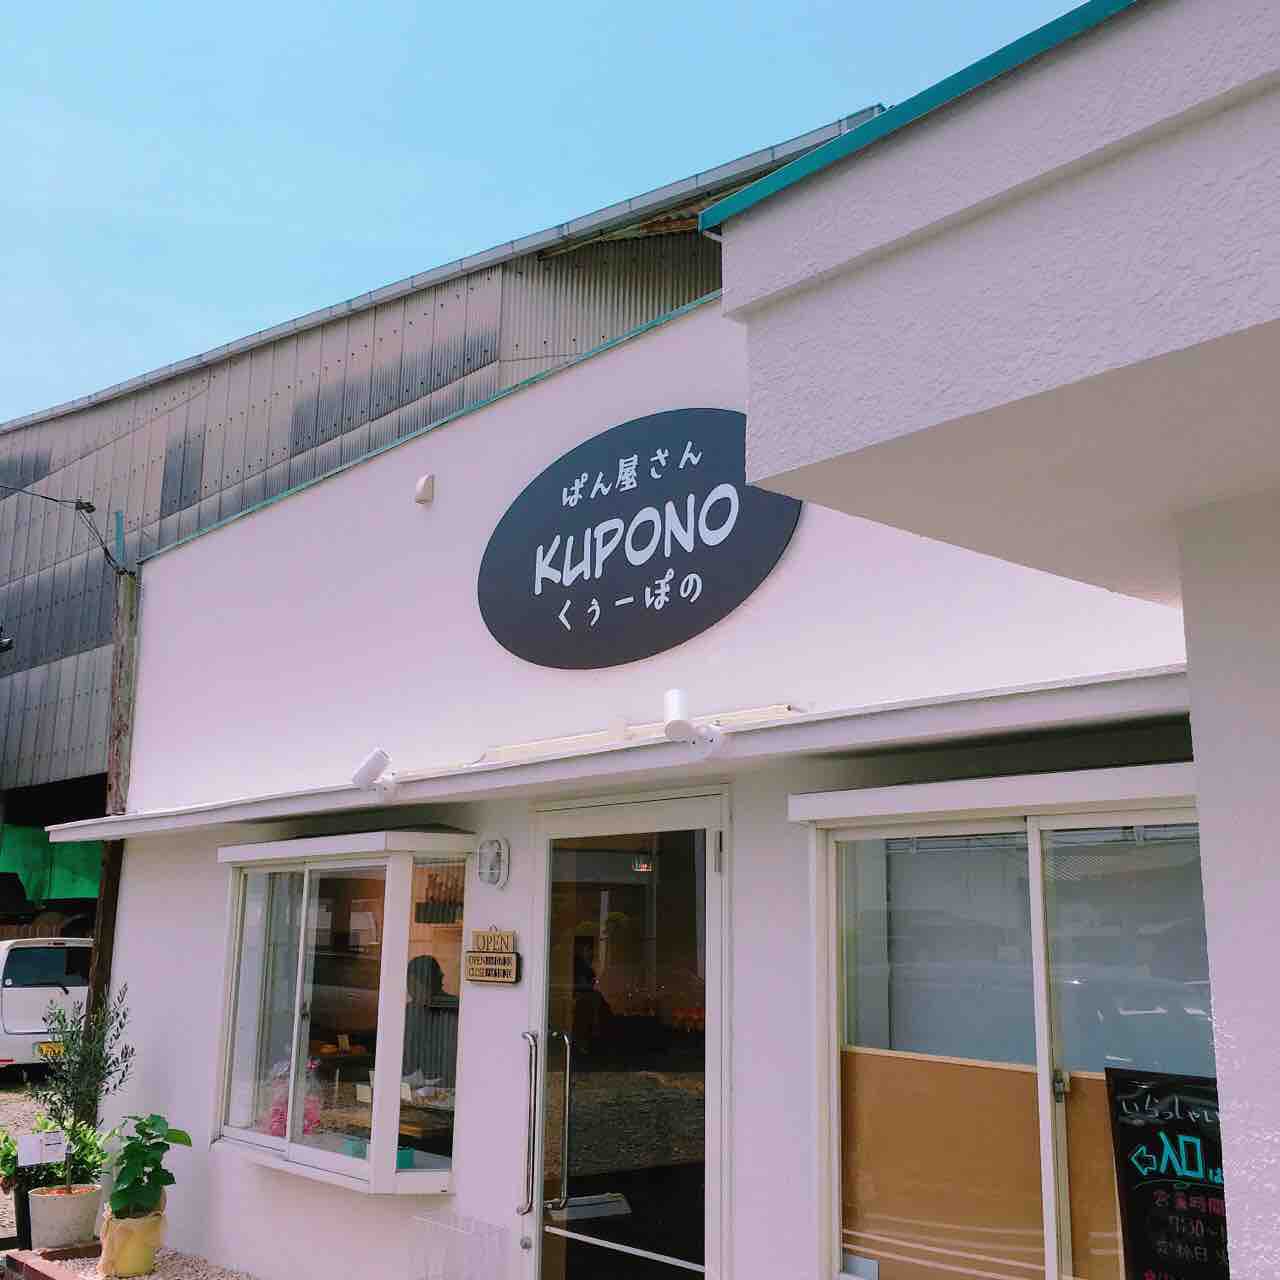 松永に新しくパン屋さんオープンしてる Kupono くぅーぽの 福山市柳津町 自由気ままにやるブログ